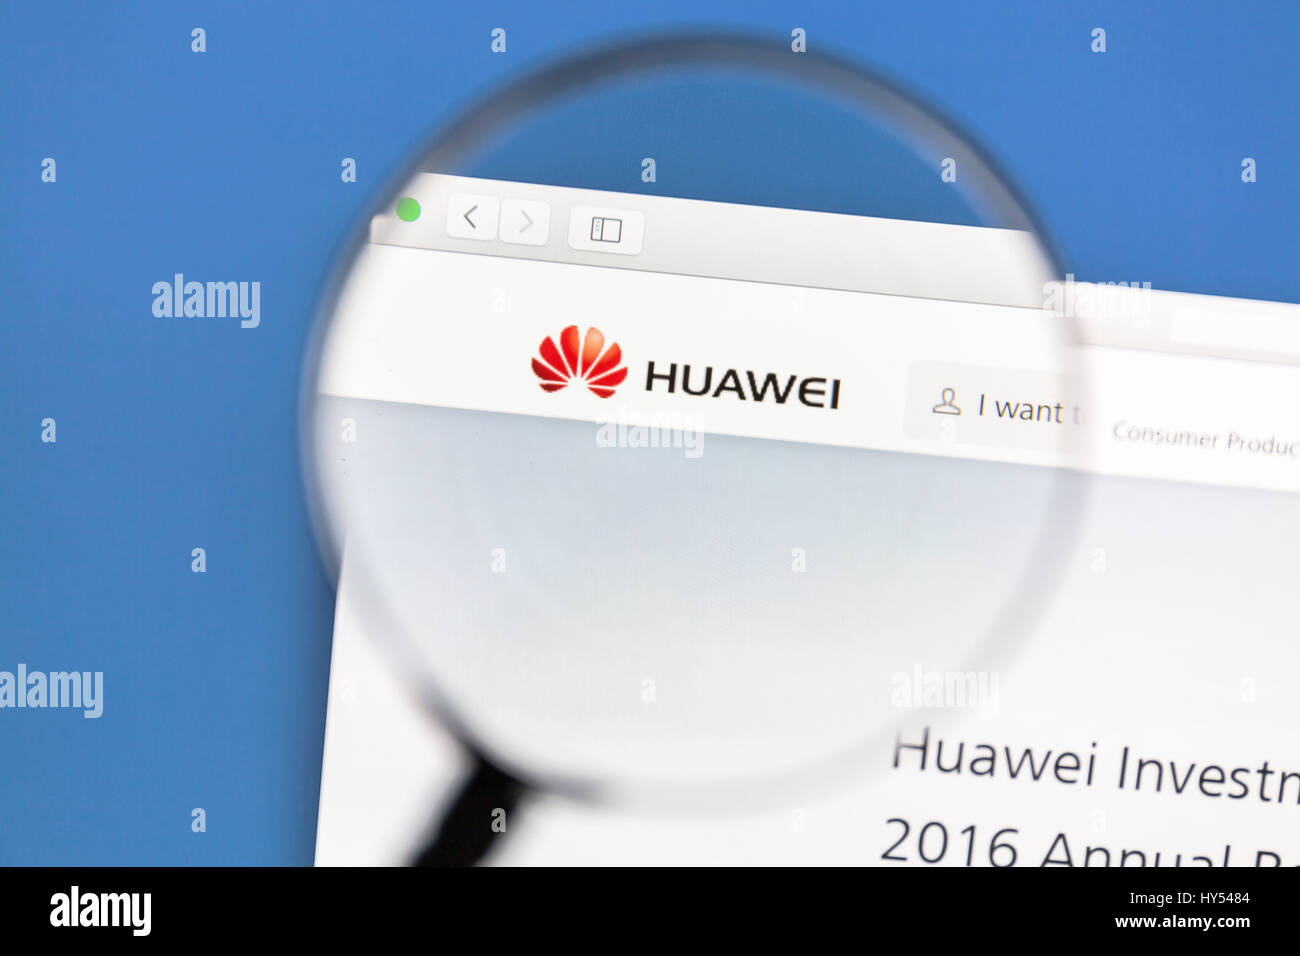 Huawei sito web sotto una lente di ingrandimento Huawei è un cinese reti multinazionali e società di servizi. Foto Stock